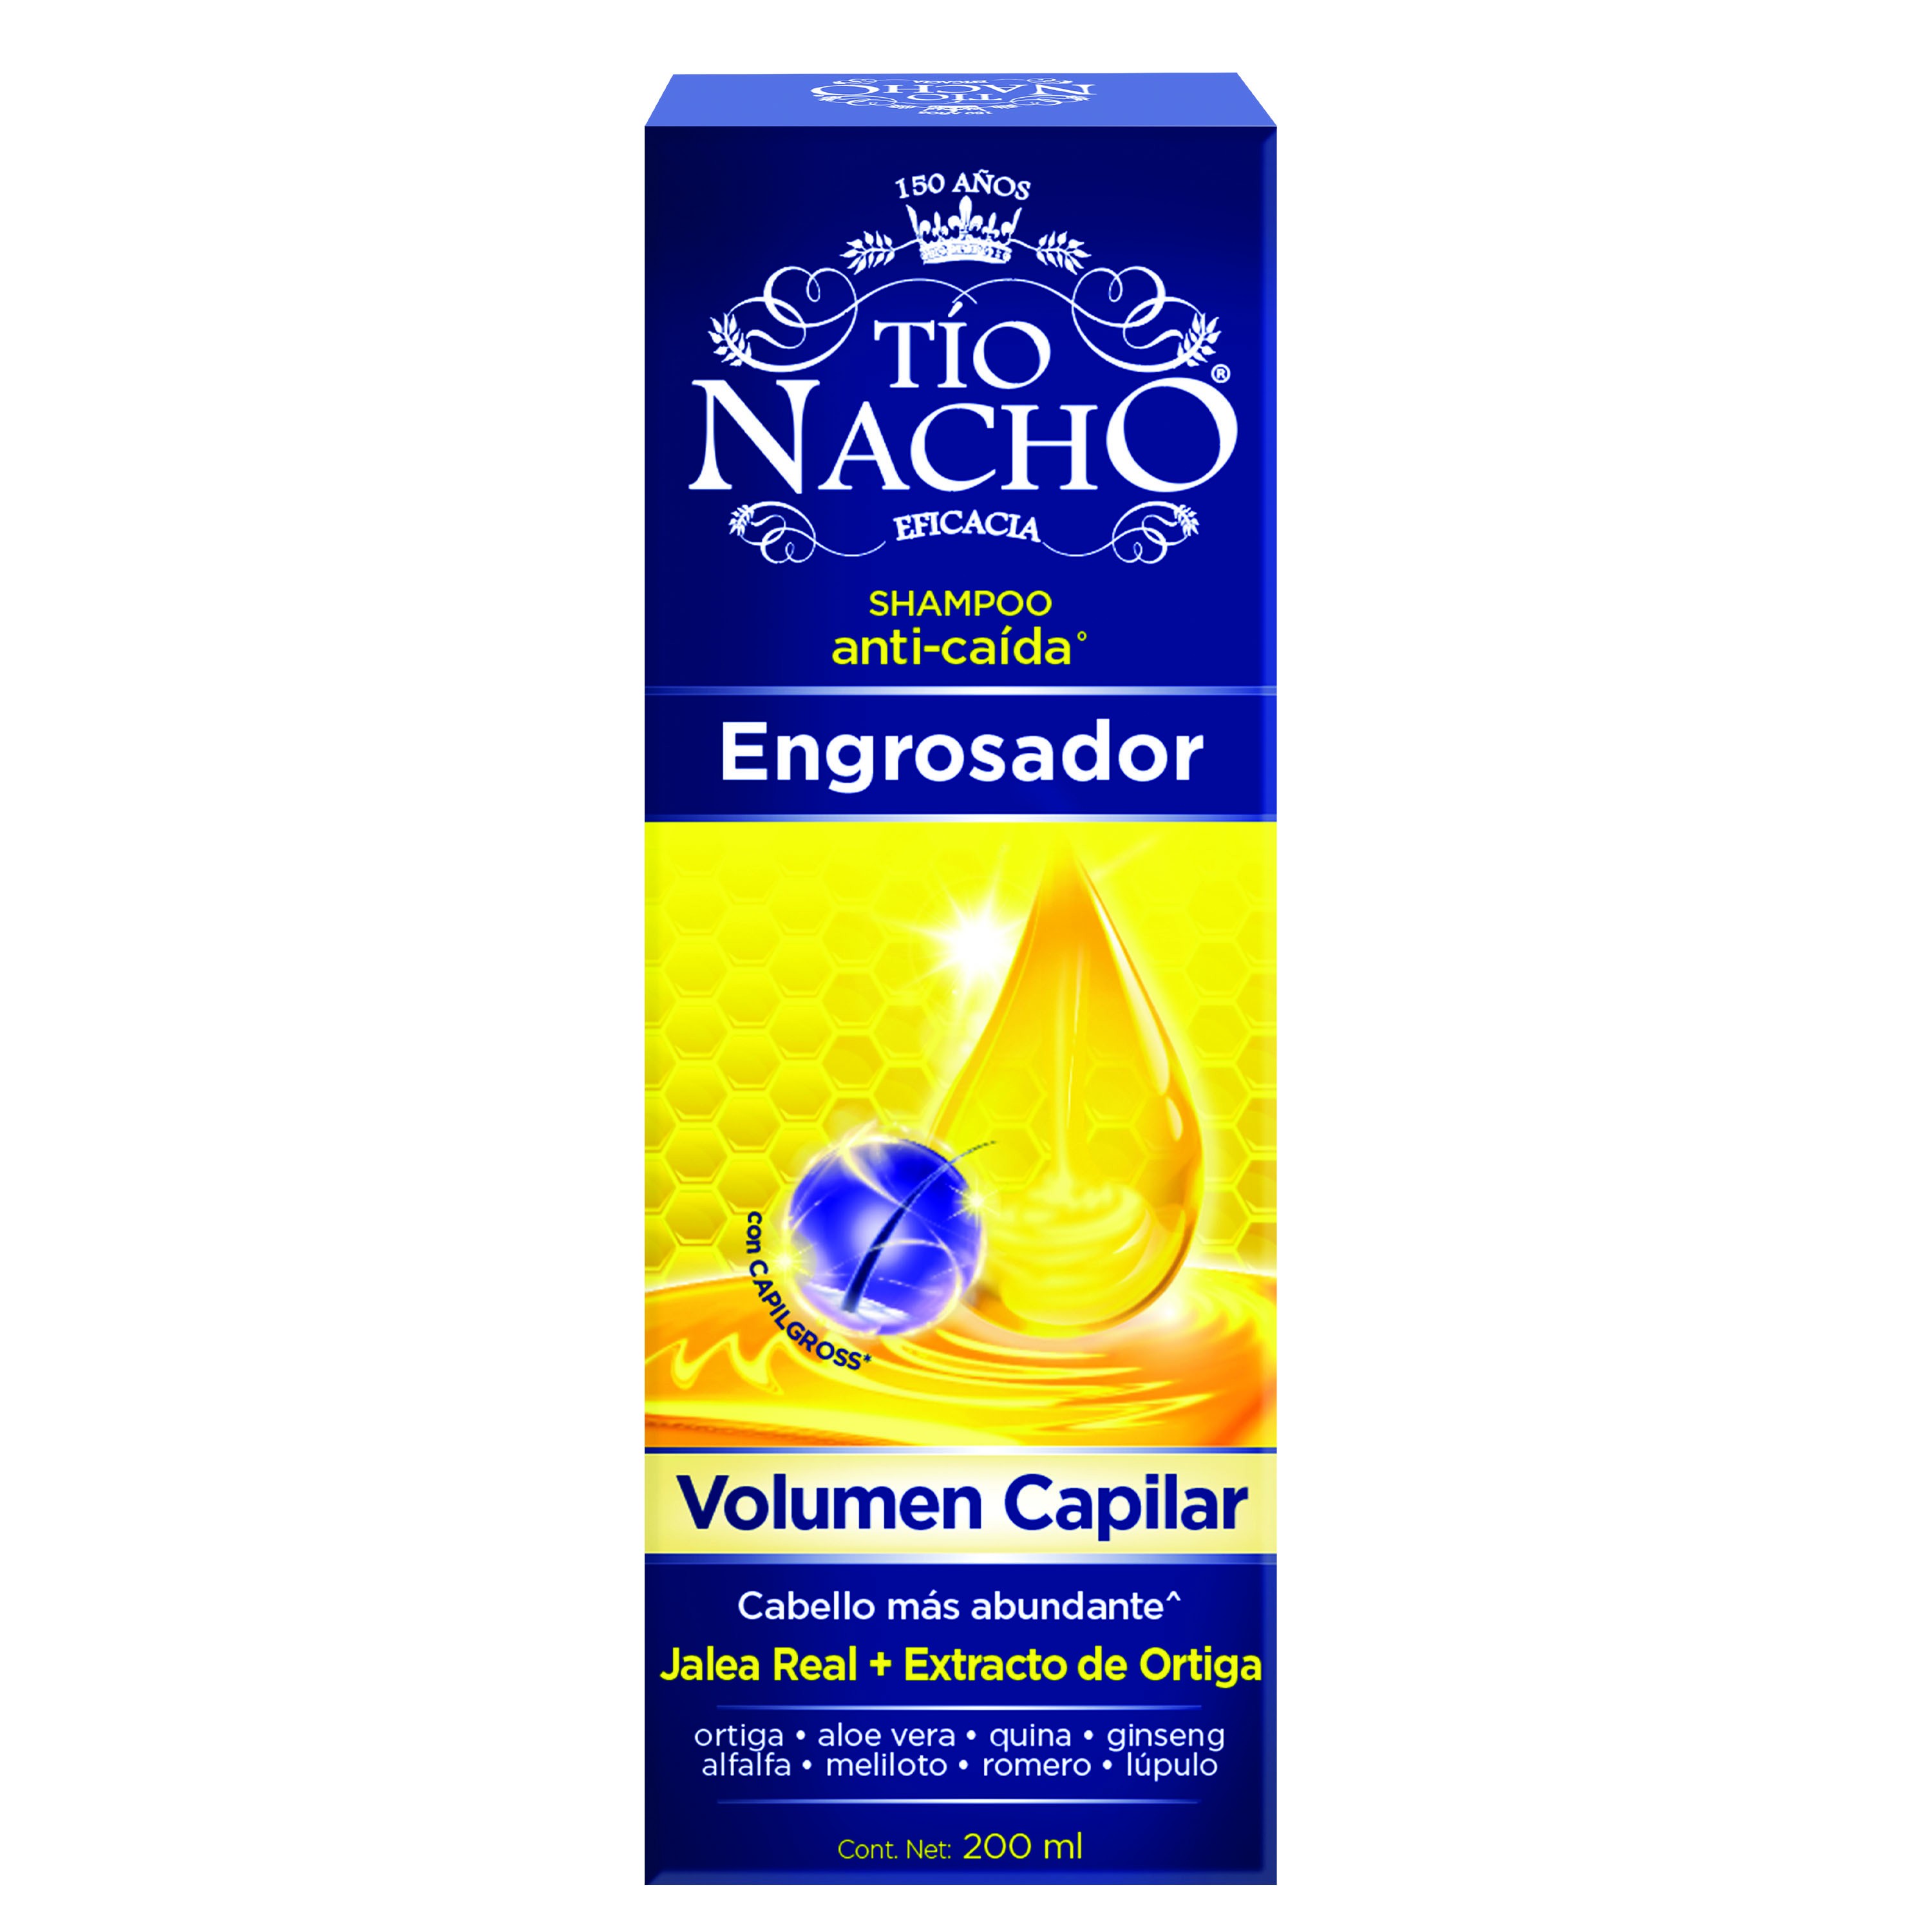 TÍo Nacho Shampoo  engrosador 200 ml/20